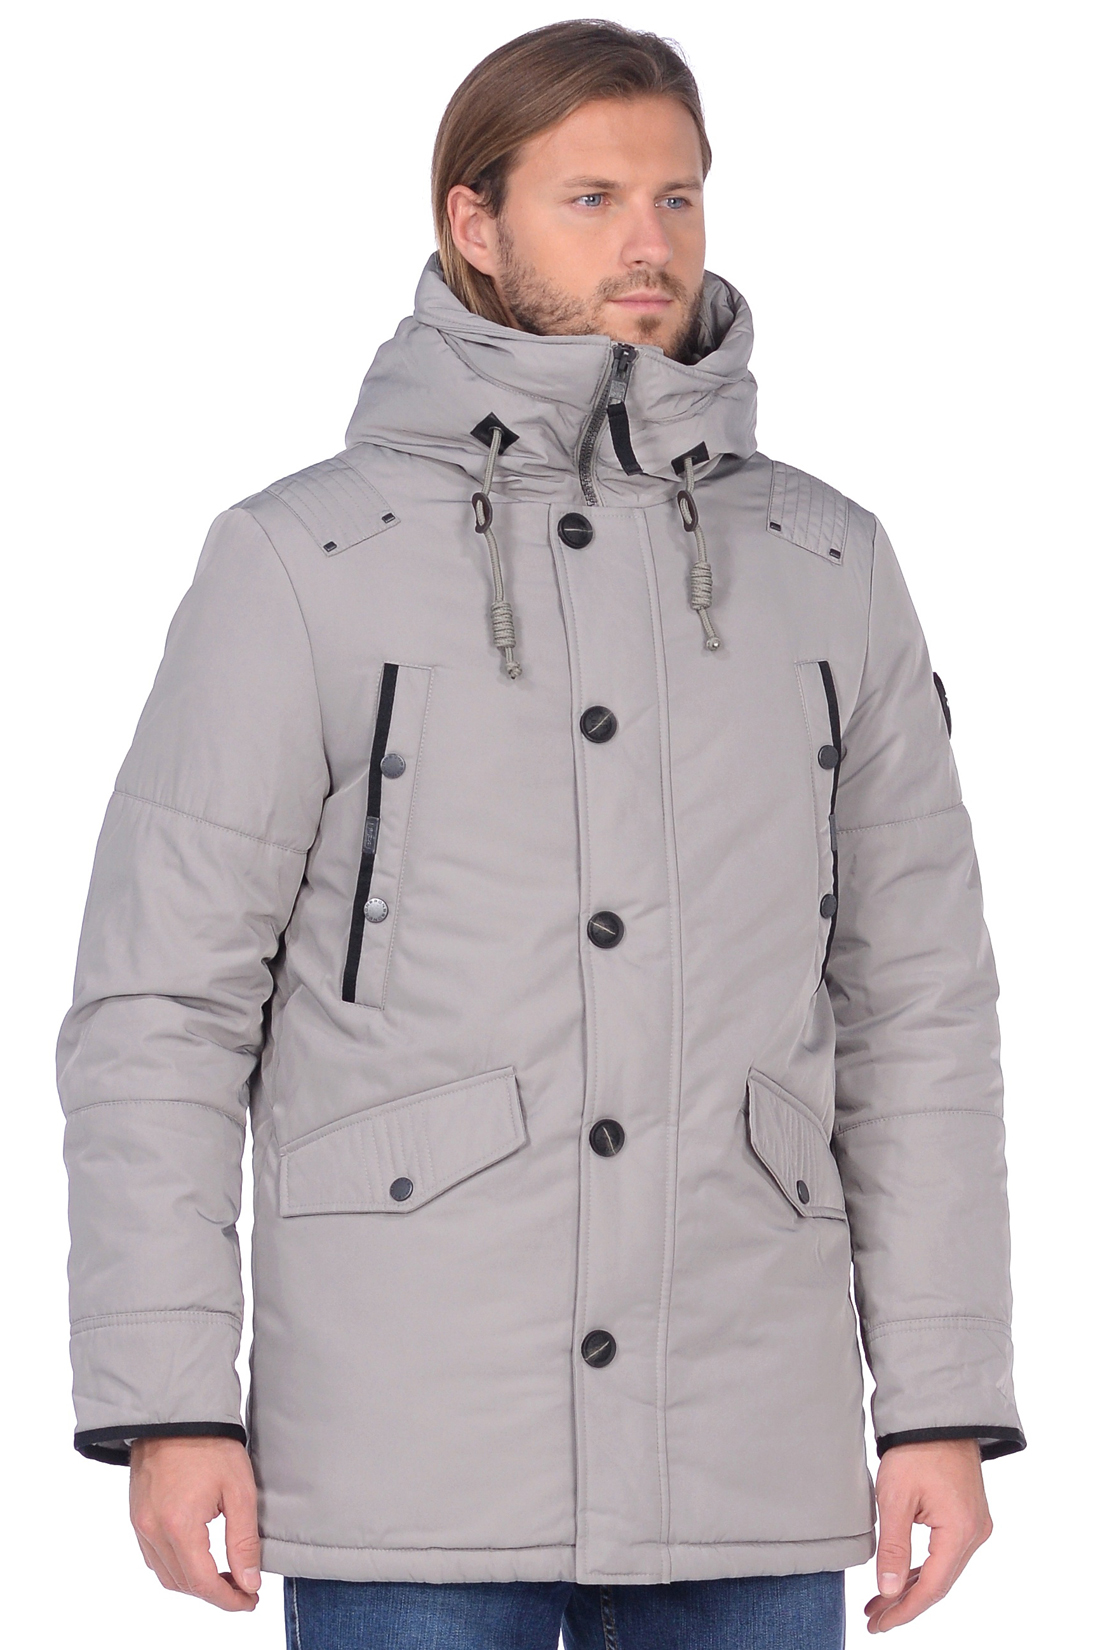 Куртка с закрытым капюшоном (арт. baon B538531), размер S, цвет серый Куртка с закрытым капюшоном (арт. baon B538531) - фото 6